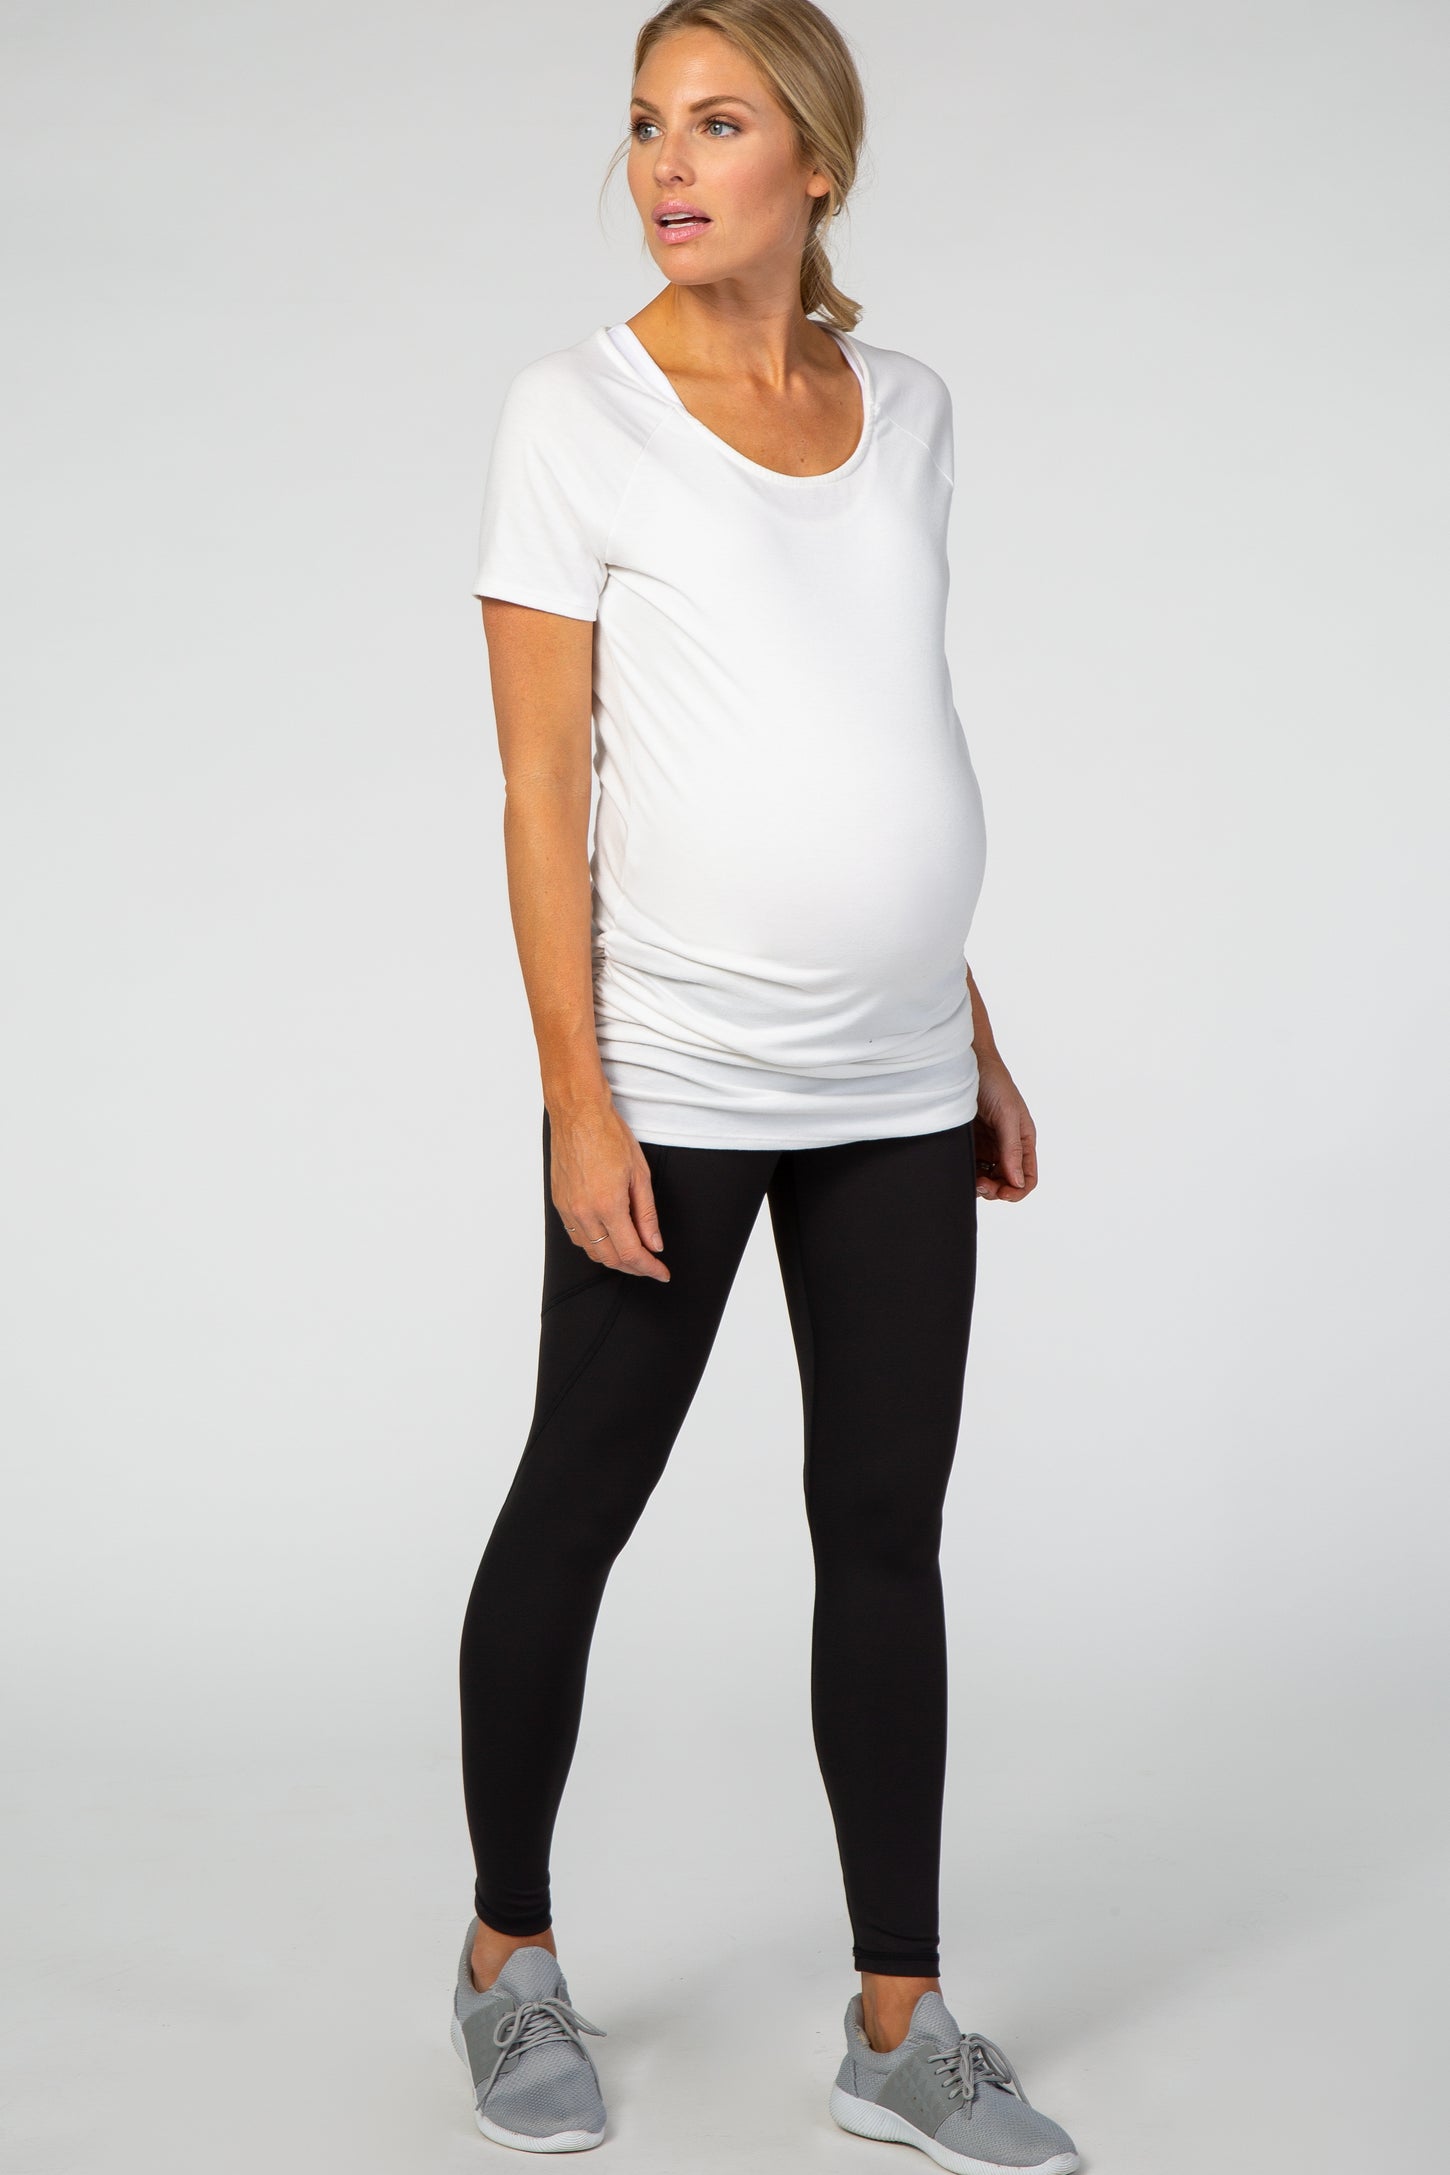 Black high waisted maternity leggings